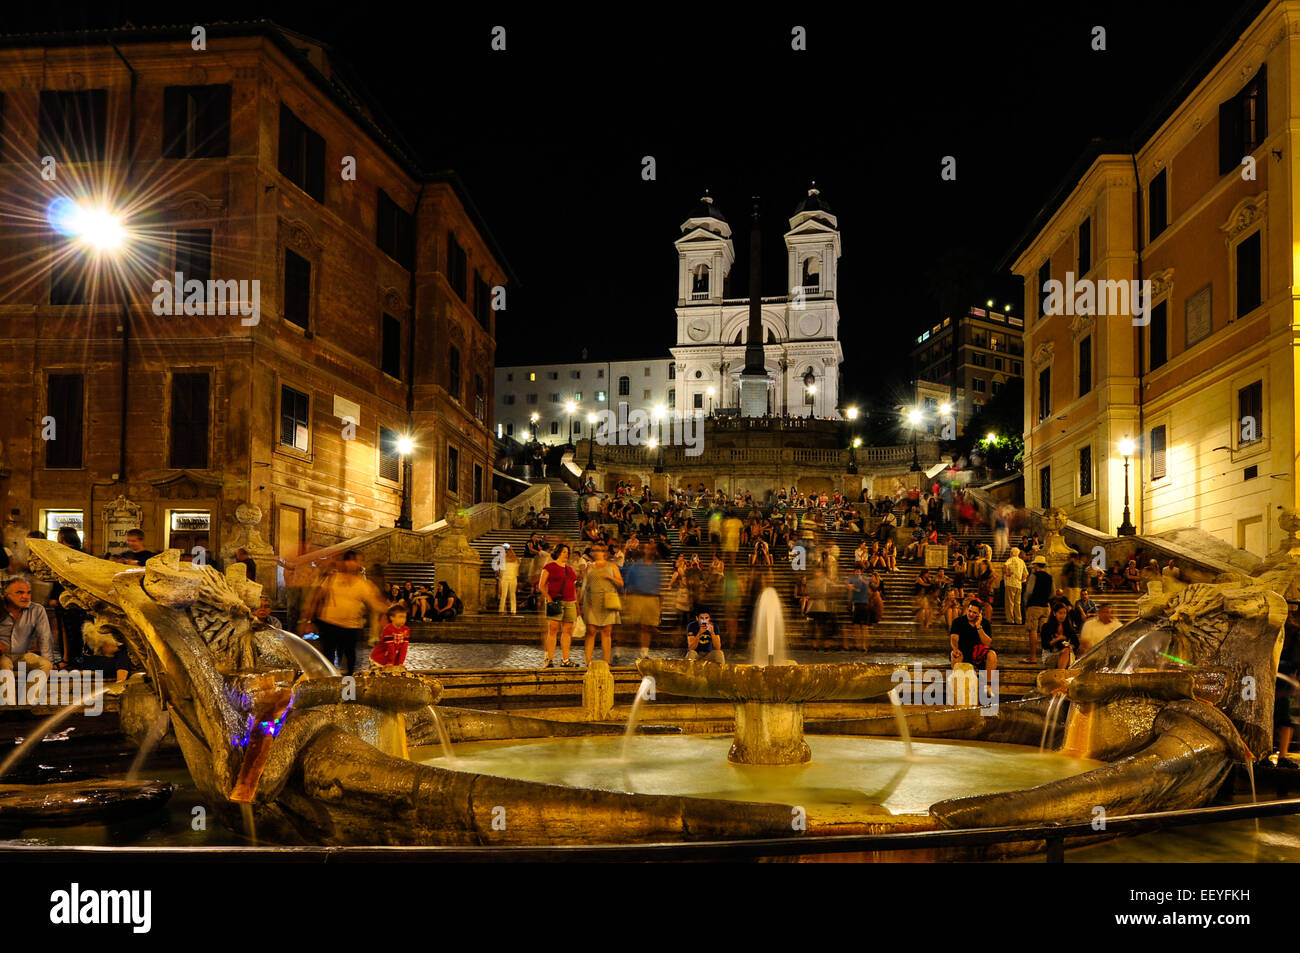 Piazza di Spagna, Rome Italy. Stock Photo